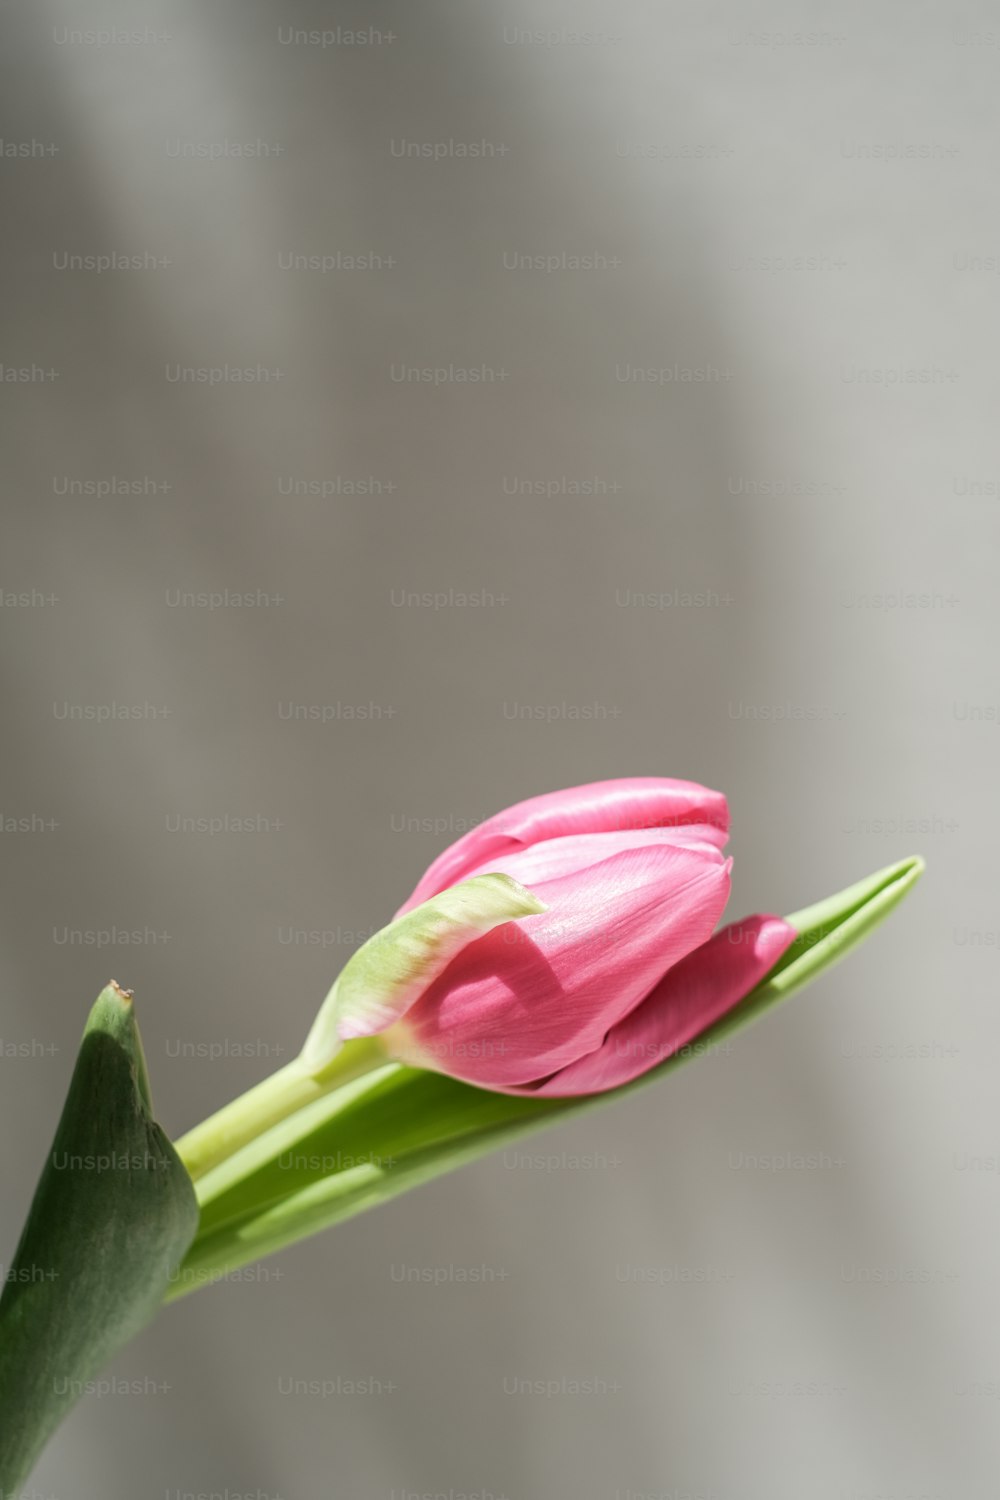 Una sola flor rosa con un tallo verde